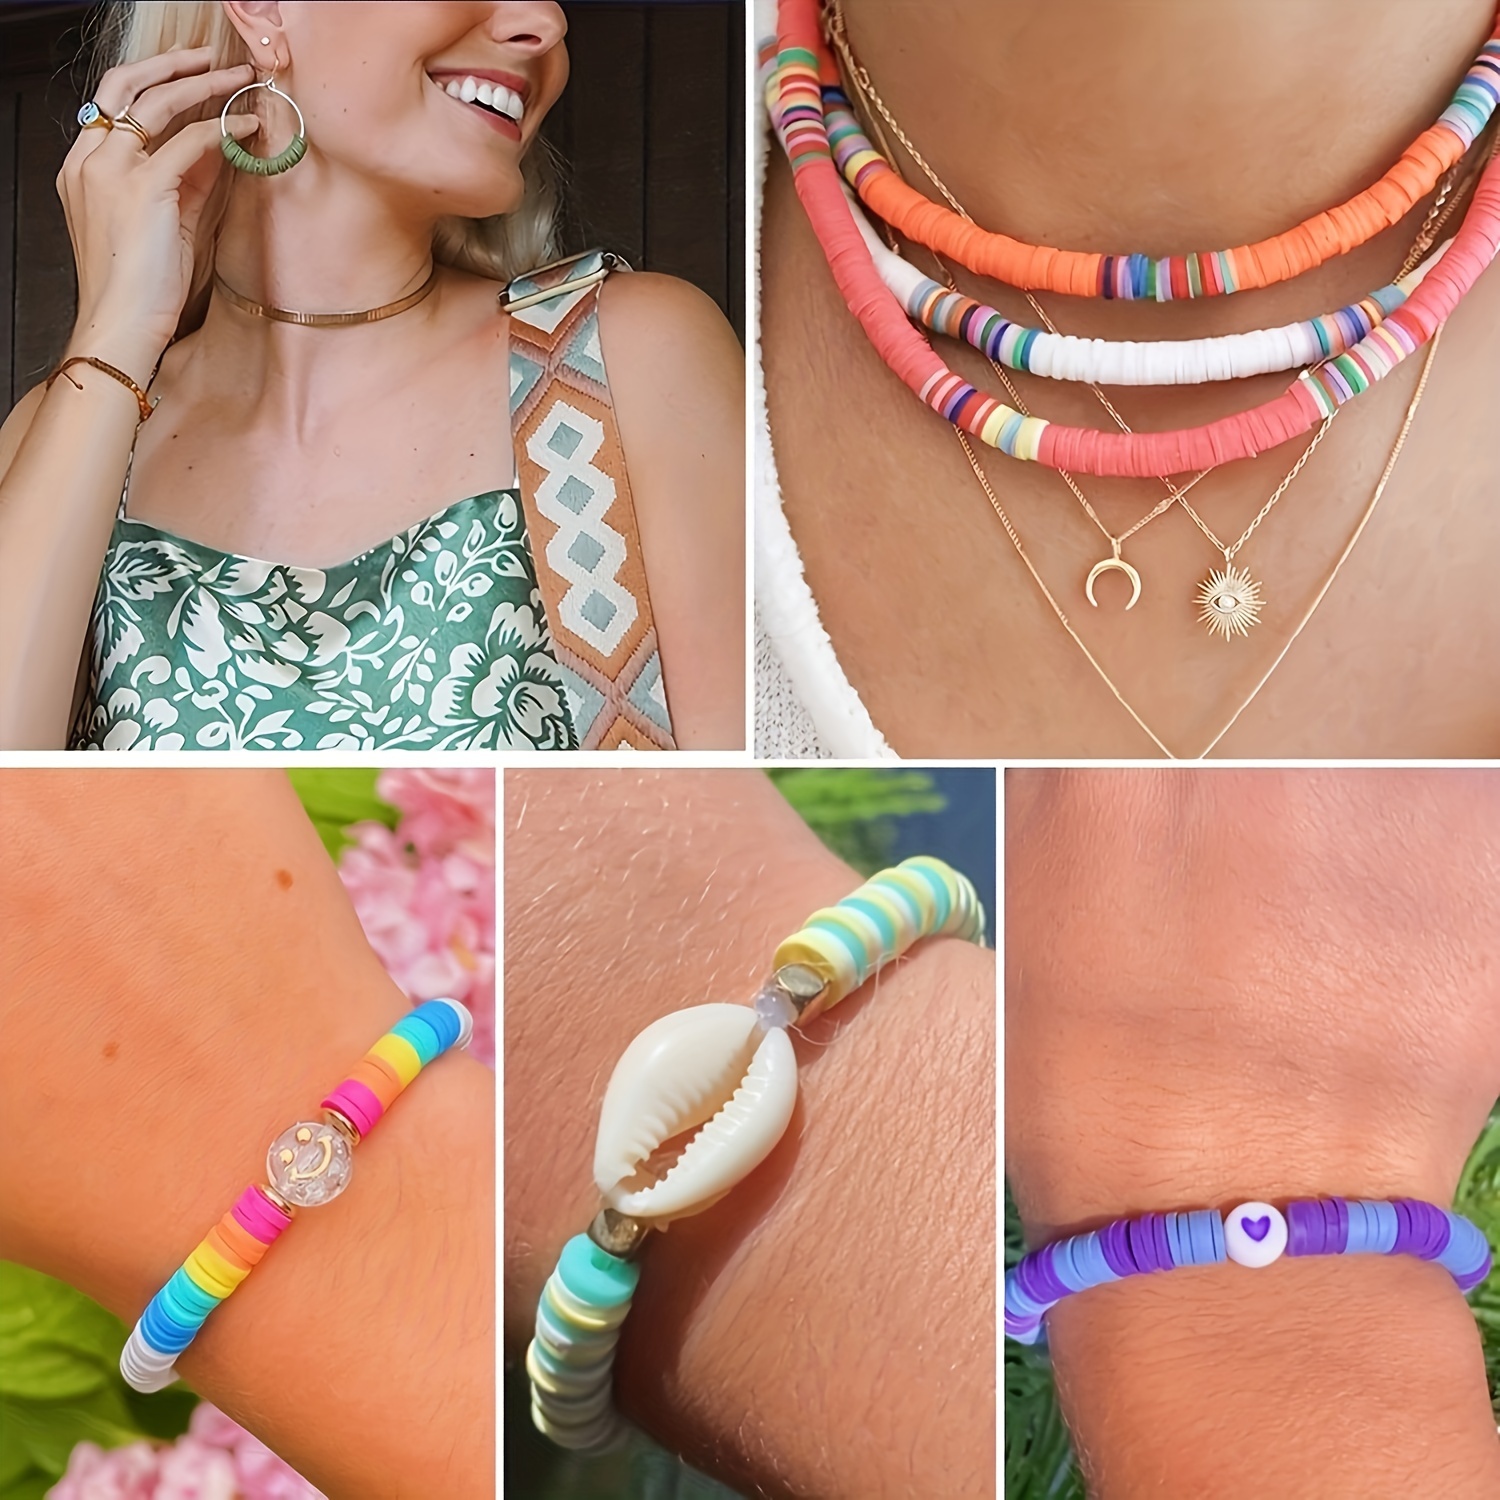  7200 Pcs Clay Beads Bracelet Making Kit, 24 Colors